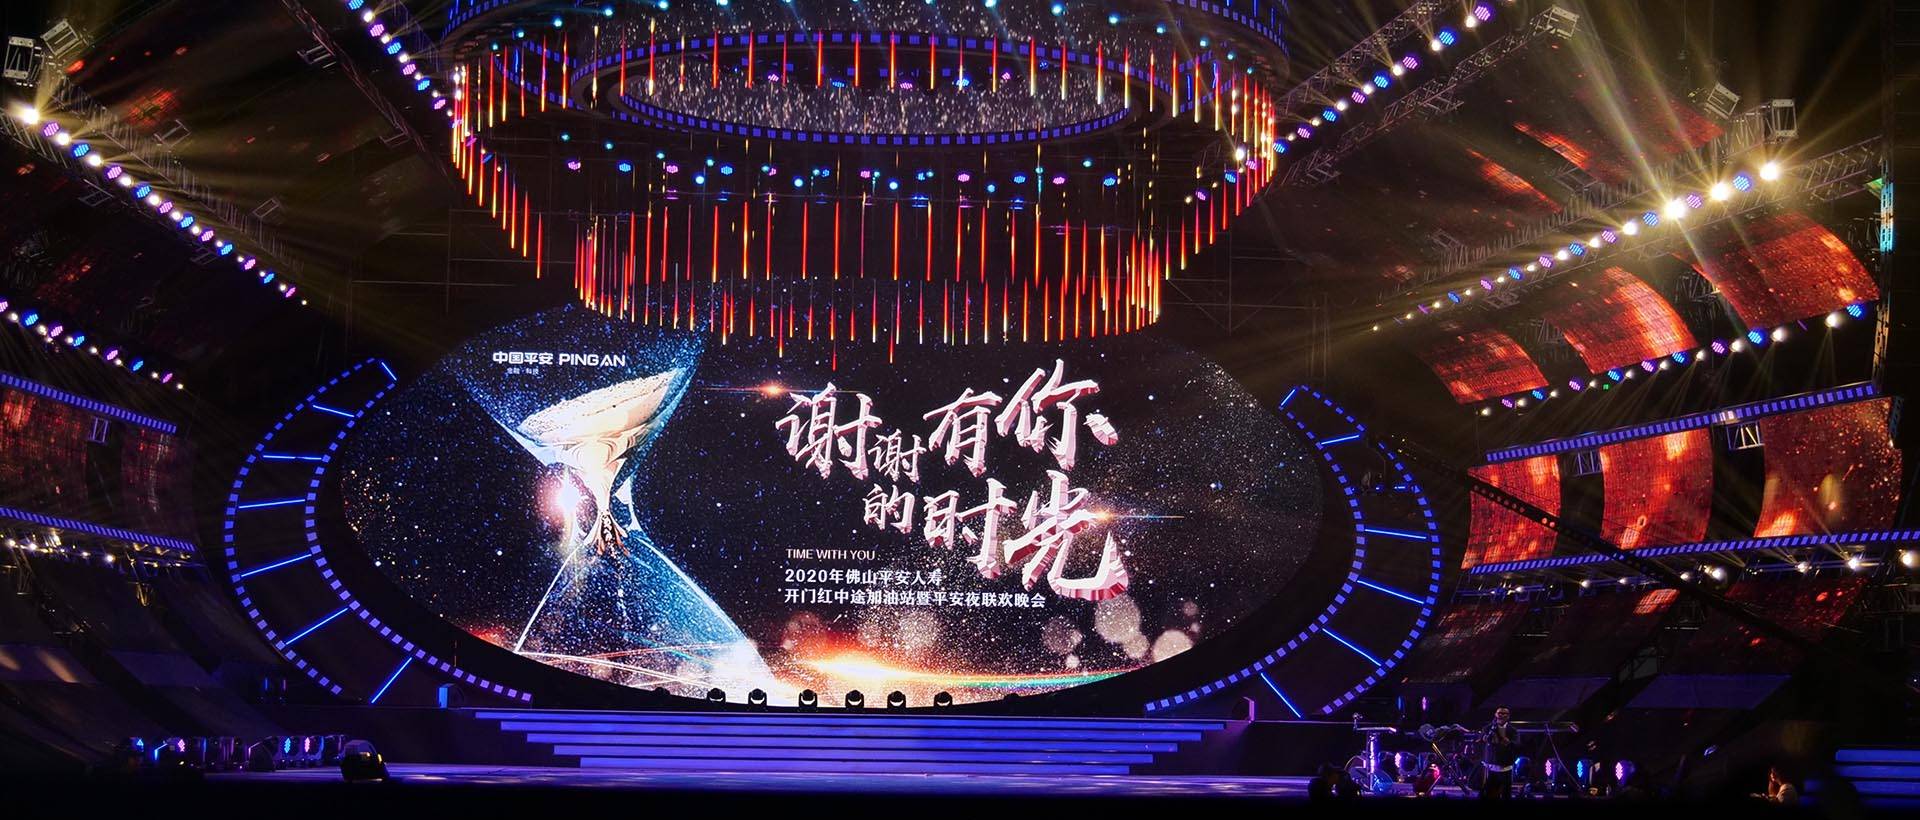 טקס הסיום של הקונג פו בסין 2019 (4)